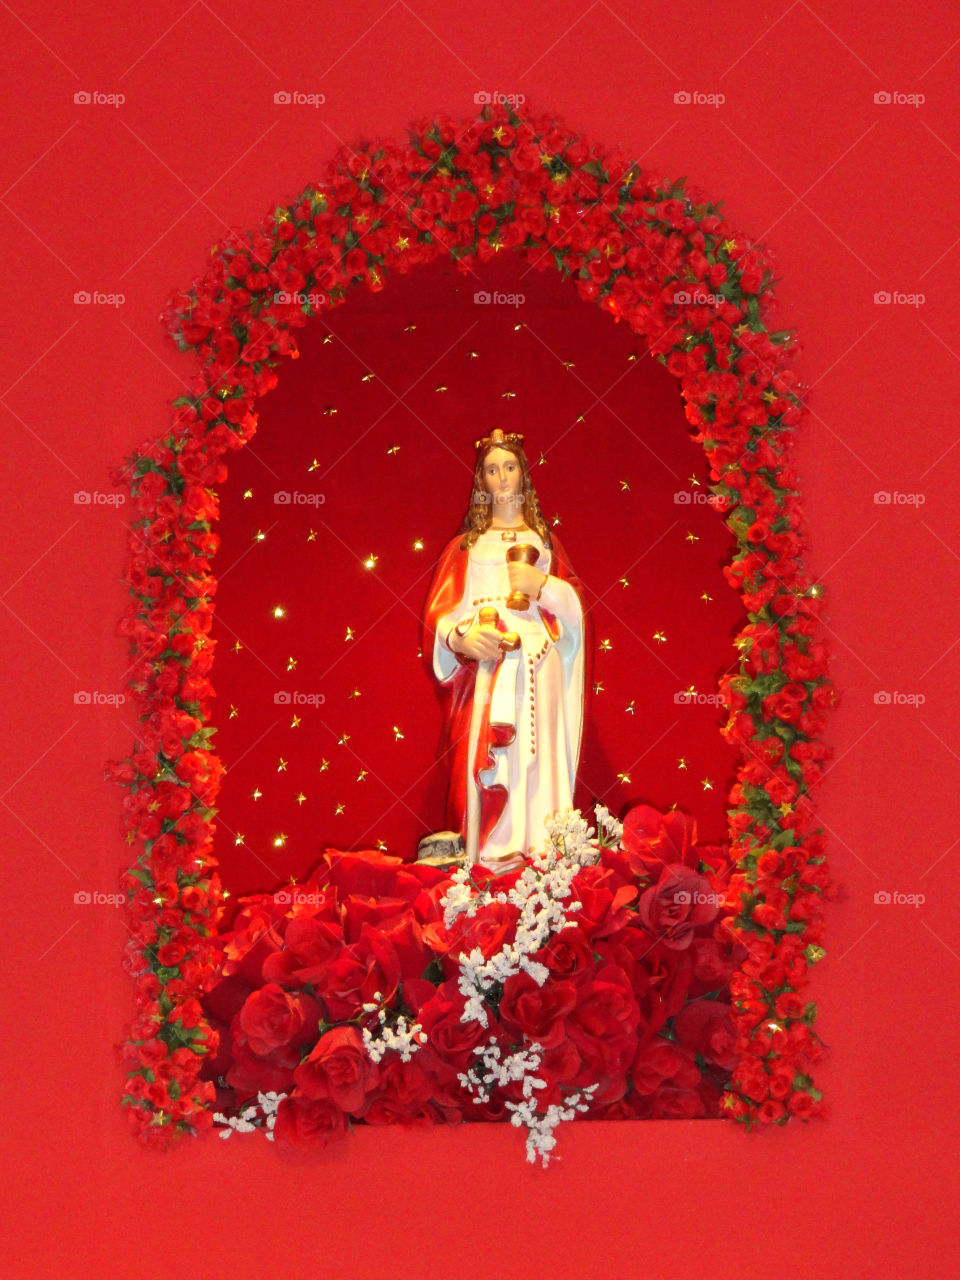 Jesus’ Red Altar